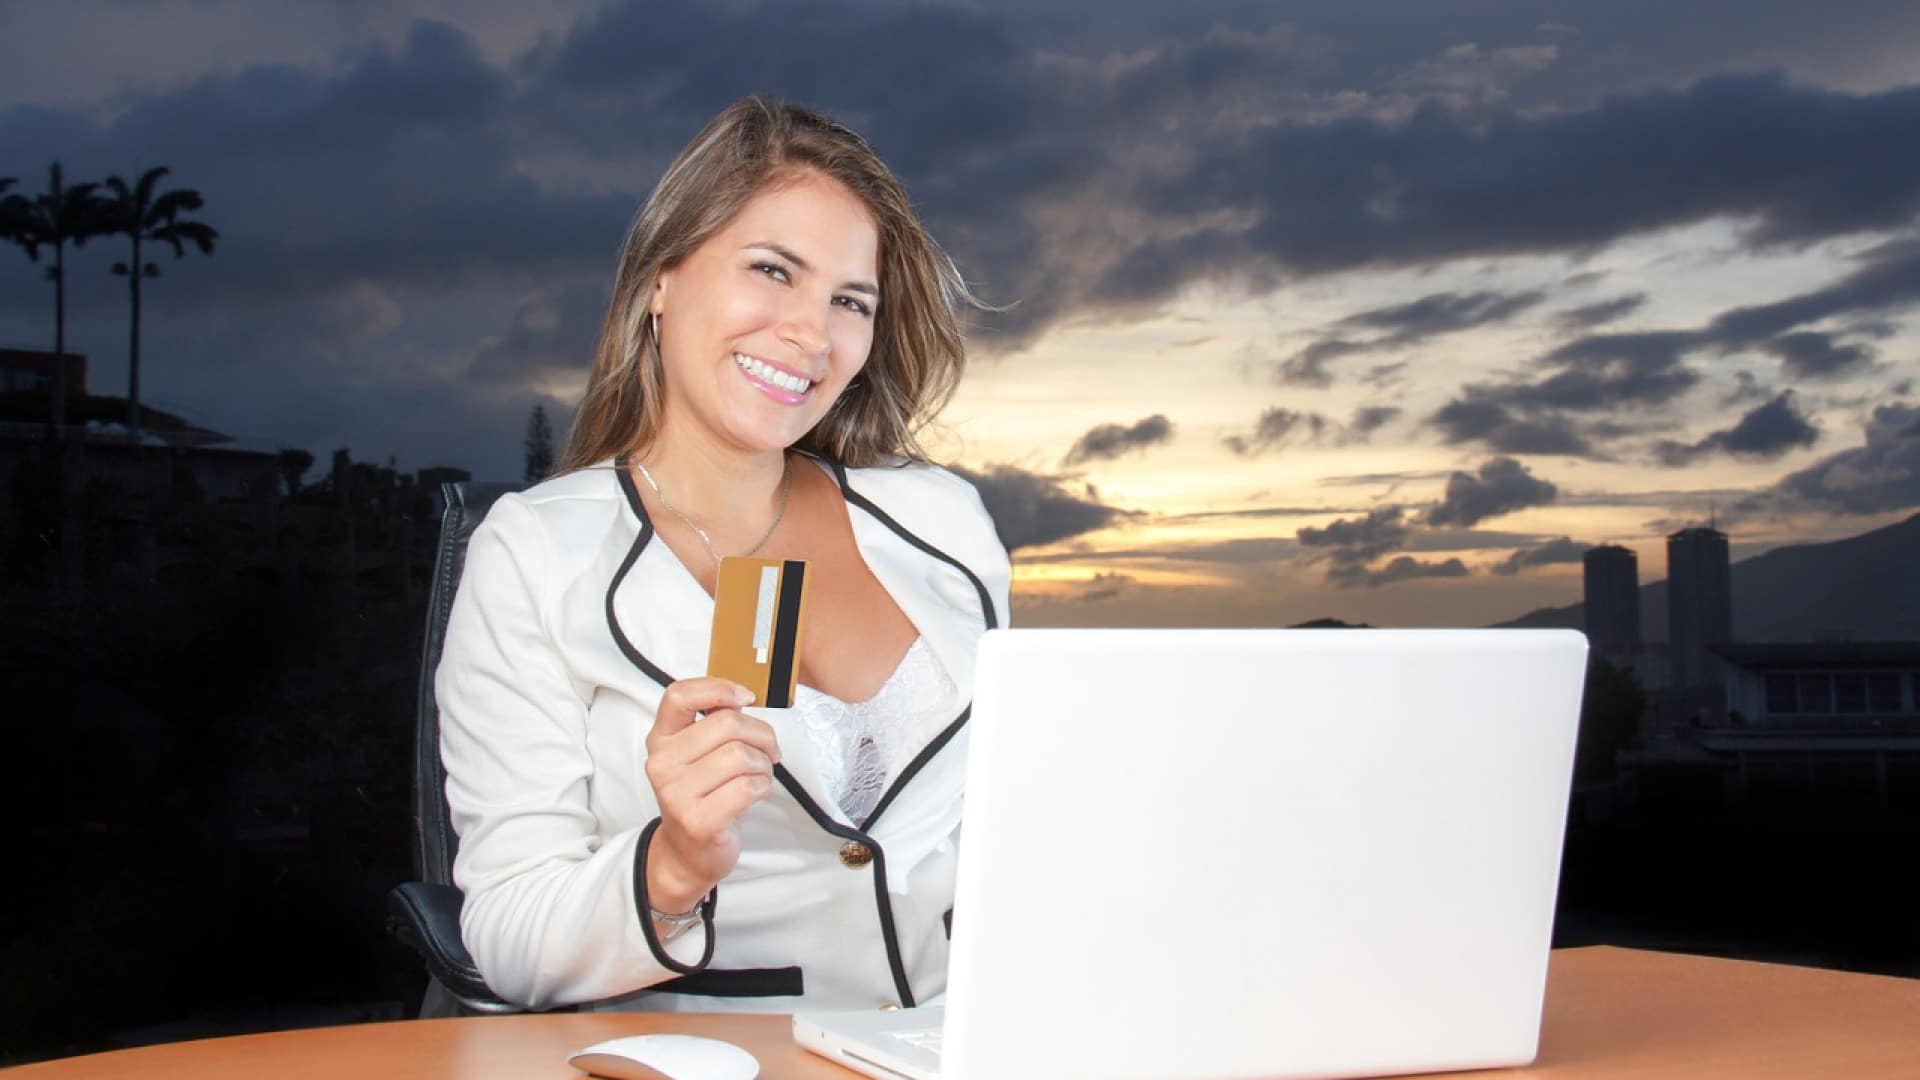 Femme souriante avec une carte de crédit assise devant un ordinateur portable à l'extérieur au crépuscule.